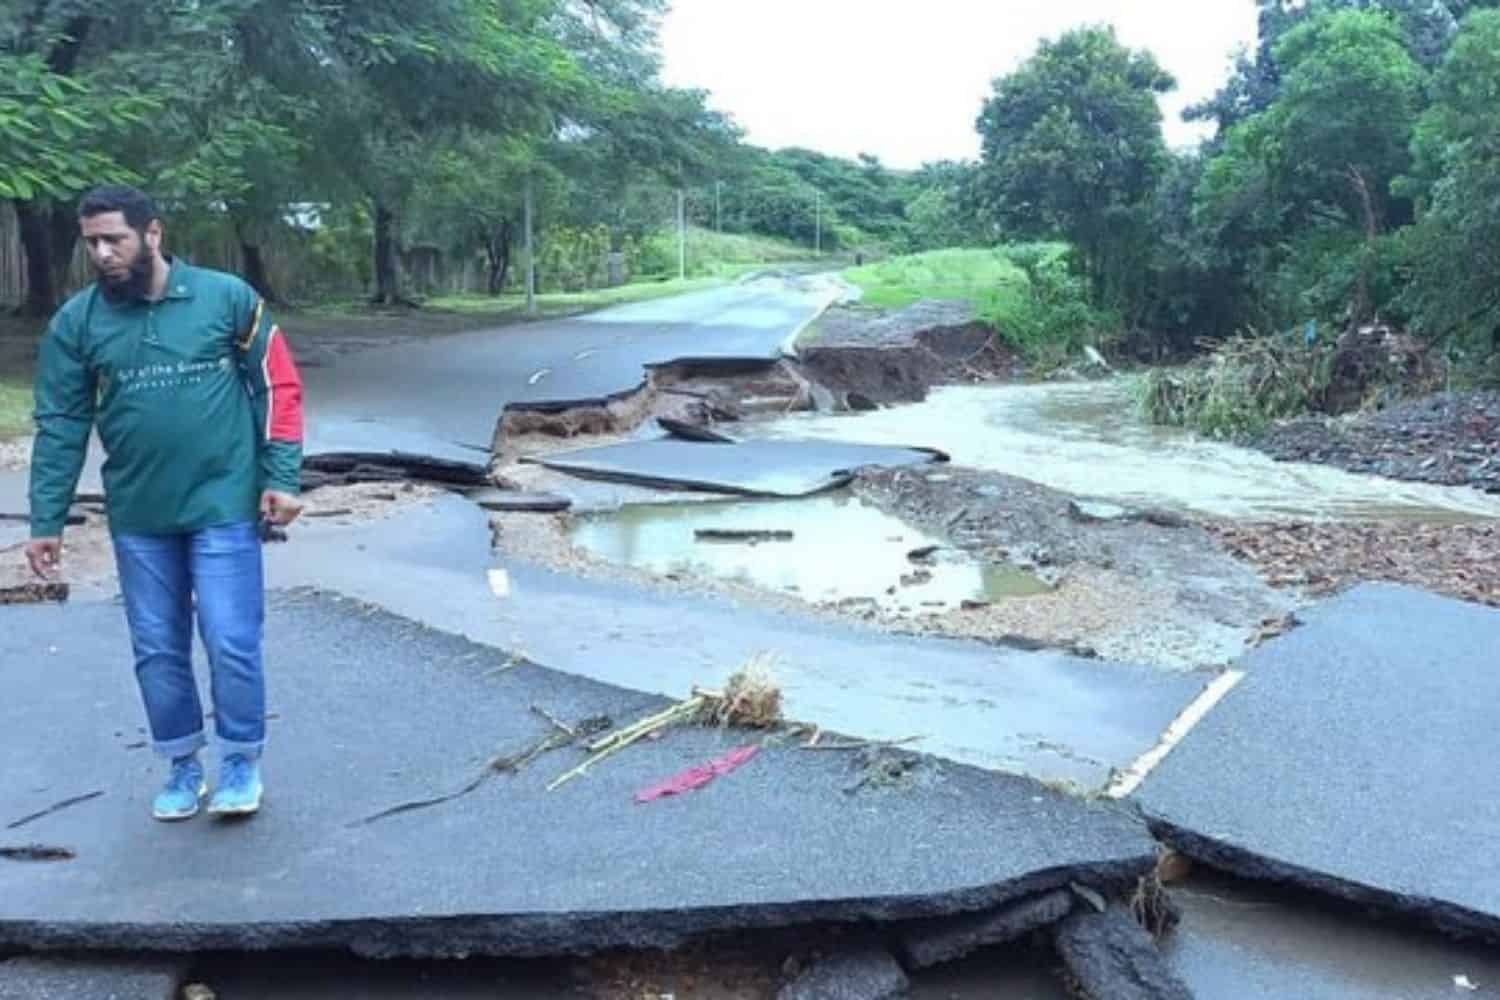 Top News for 13 April 2022 - Ramaphosa to visit KZN after devastating floods